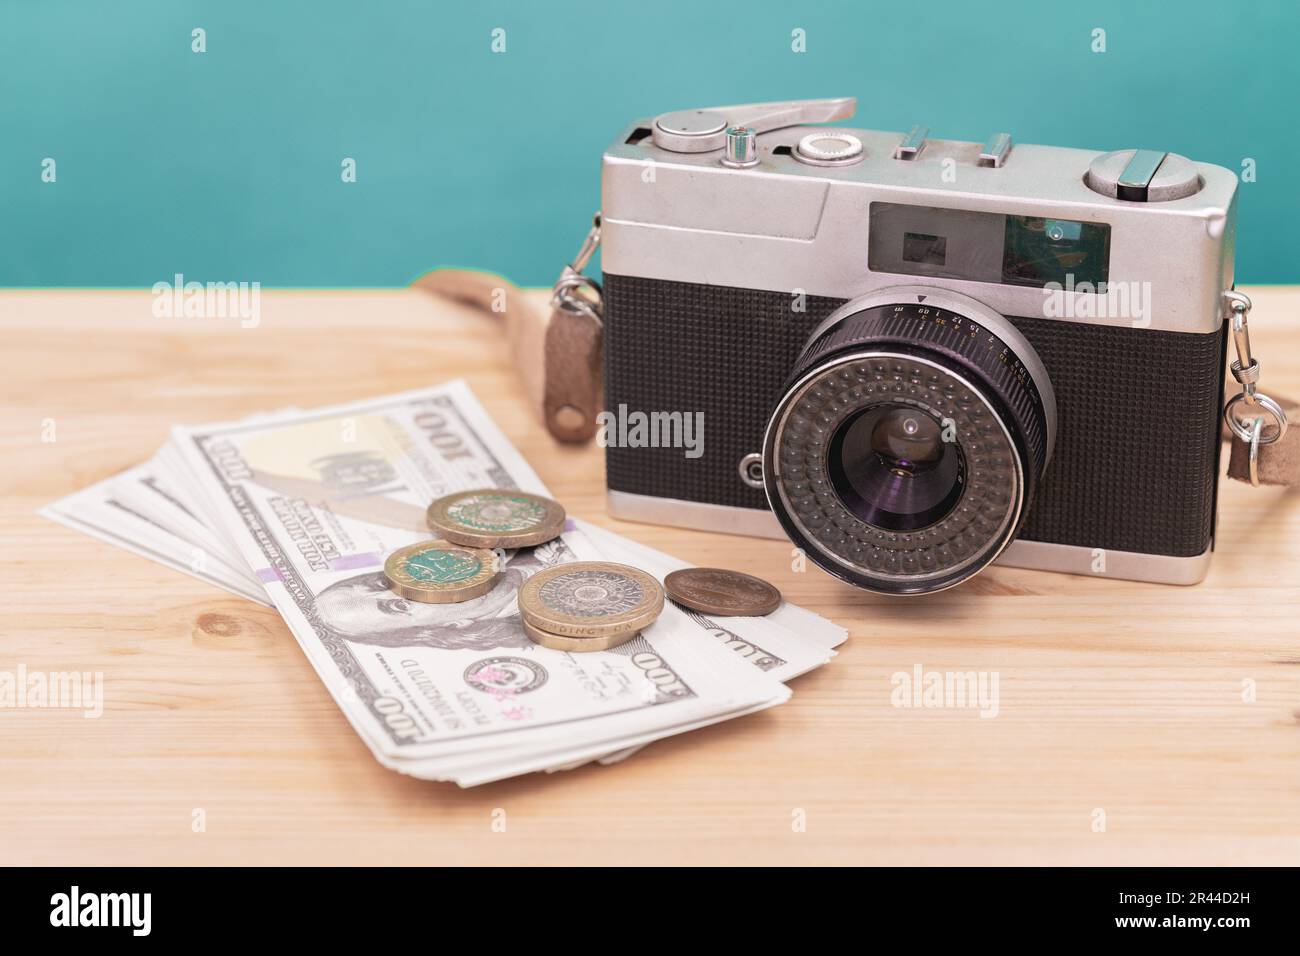 macchina fotografica vintage con denaro falso per vendere fotografia o immagine di stock fotografo business concetto di carriera Foto Stock